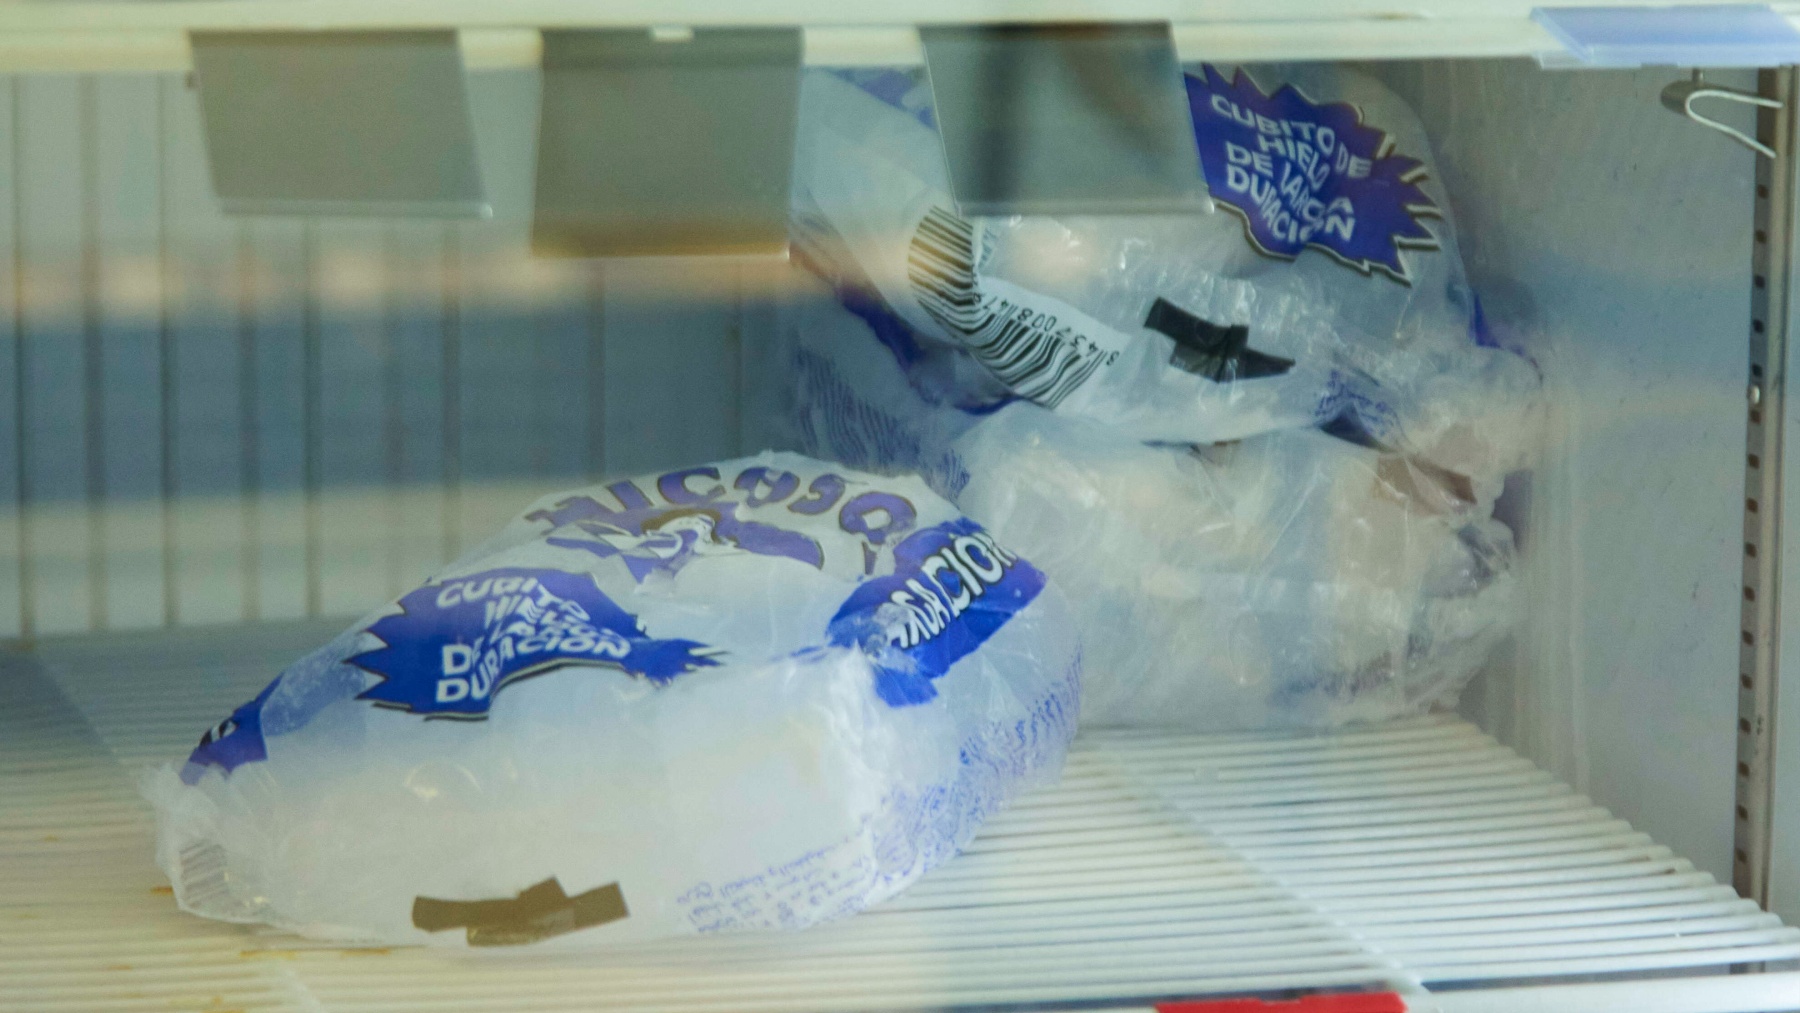 Bolsas de hielo en un supermercado de Sevilla (EUROPA PRESS).